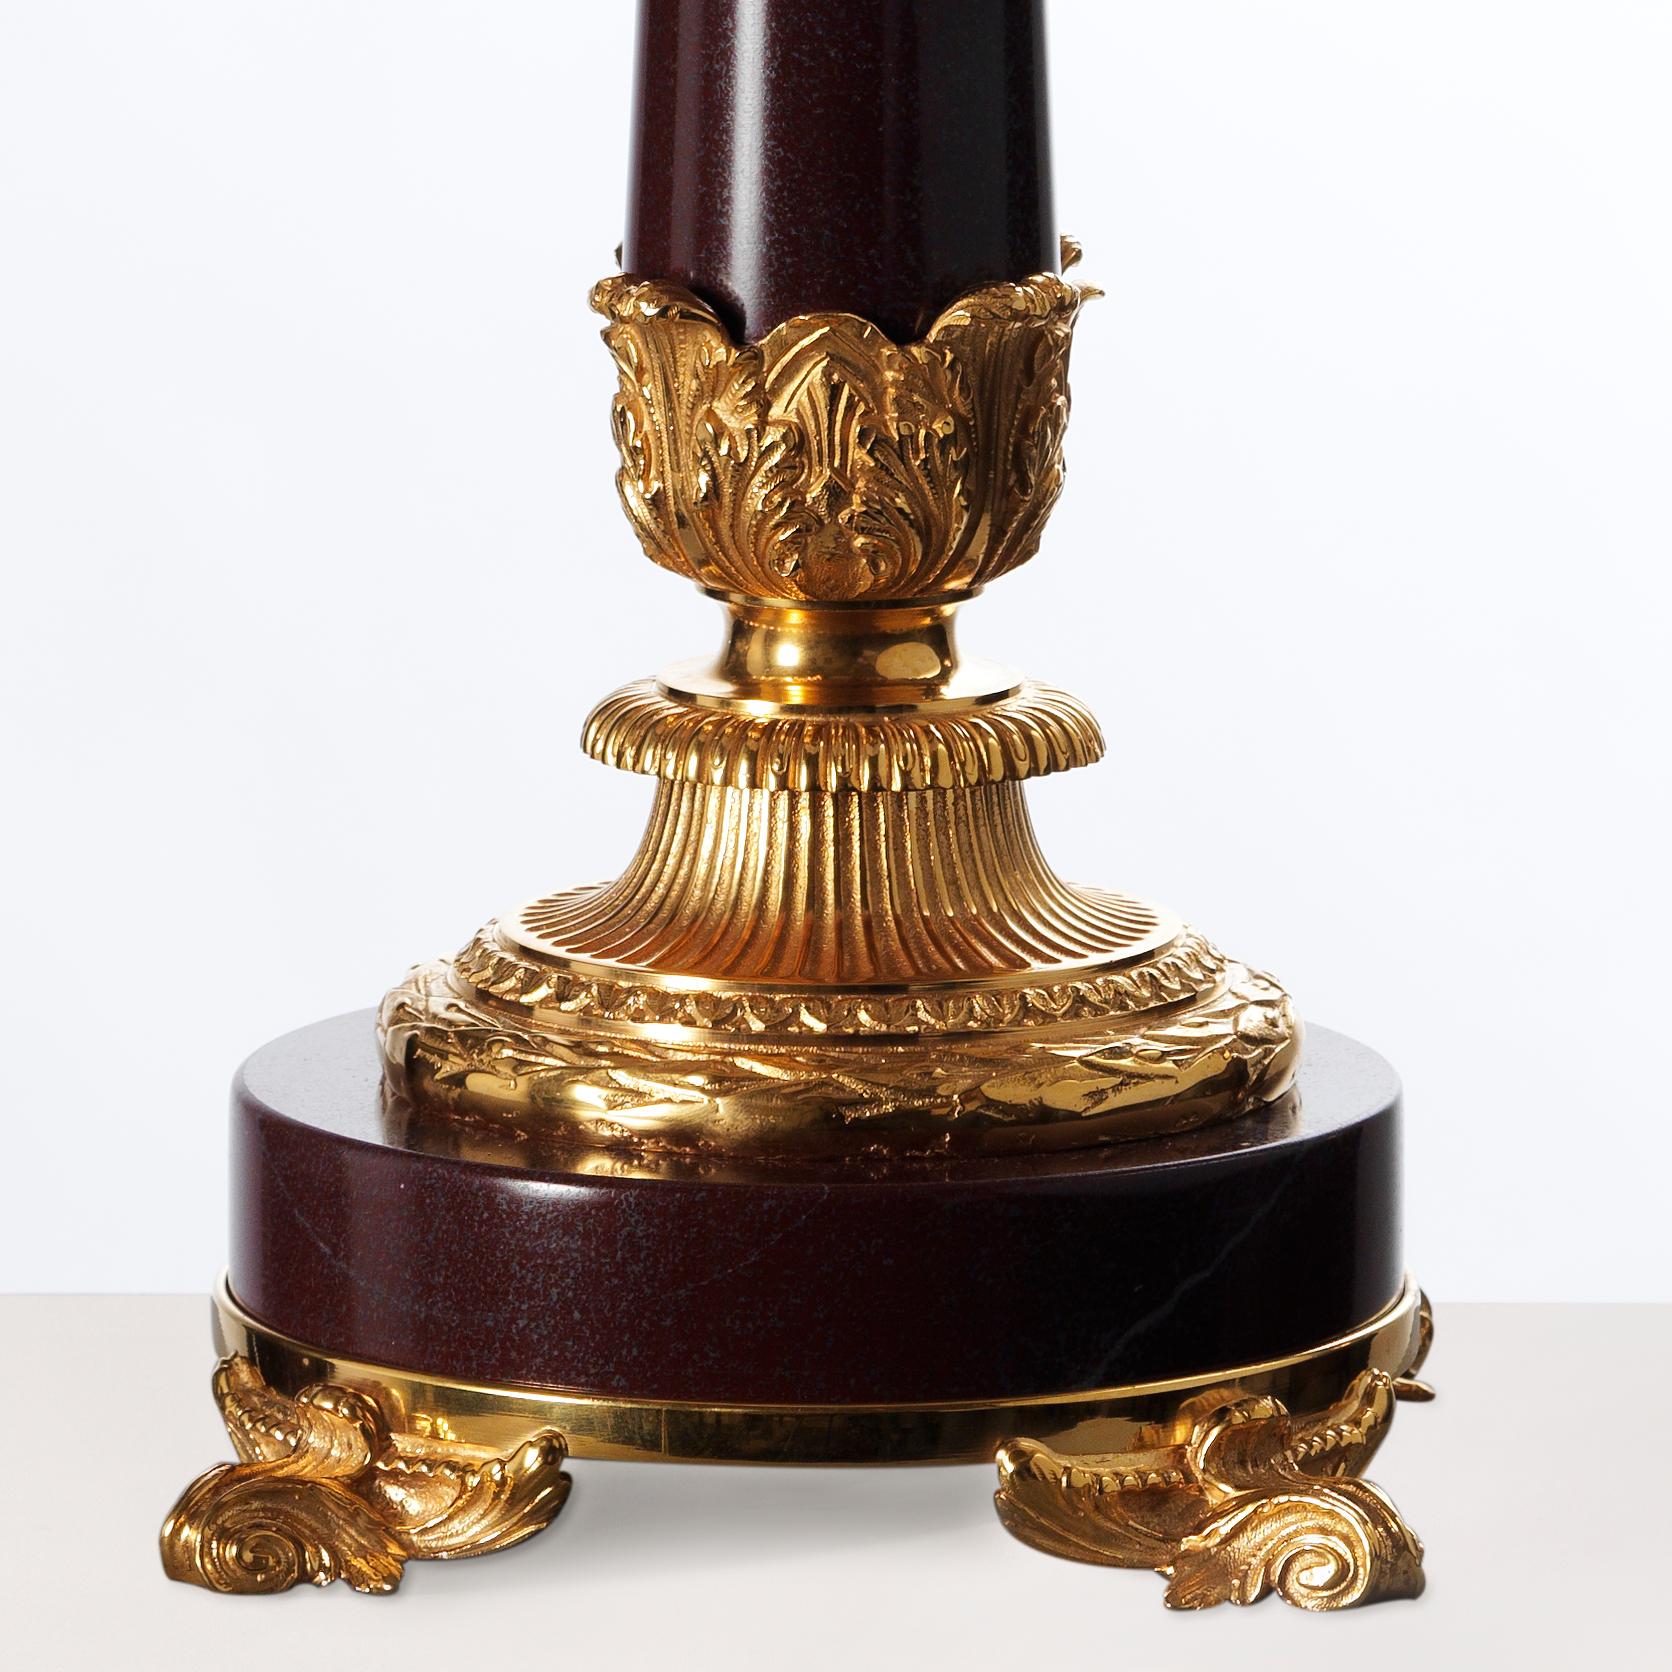 Cet élégant candélabre de style Louis XVI de Gherardo Degli Albizzi présente une décoration en bronze doré de haute qualité, comme le chapiteau de style corinthien entièrement ciselé ou la base avec un motif de fleurs et le profil en bronze avec un